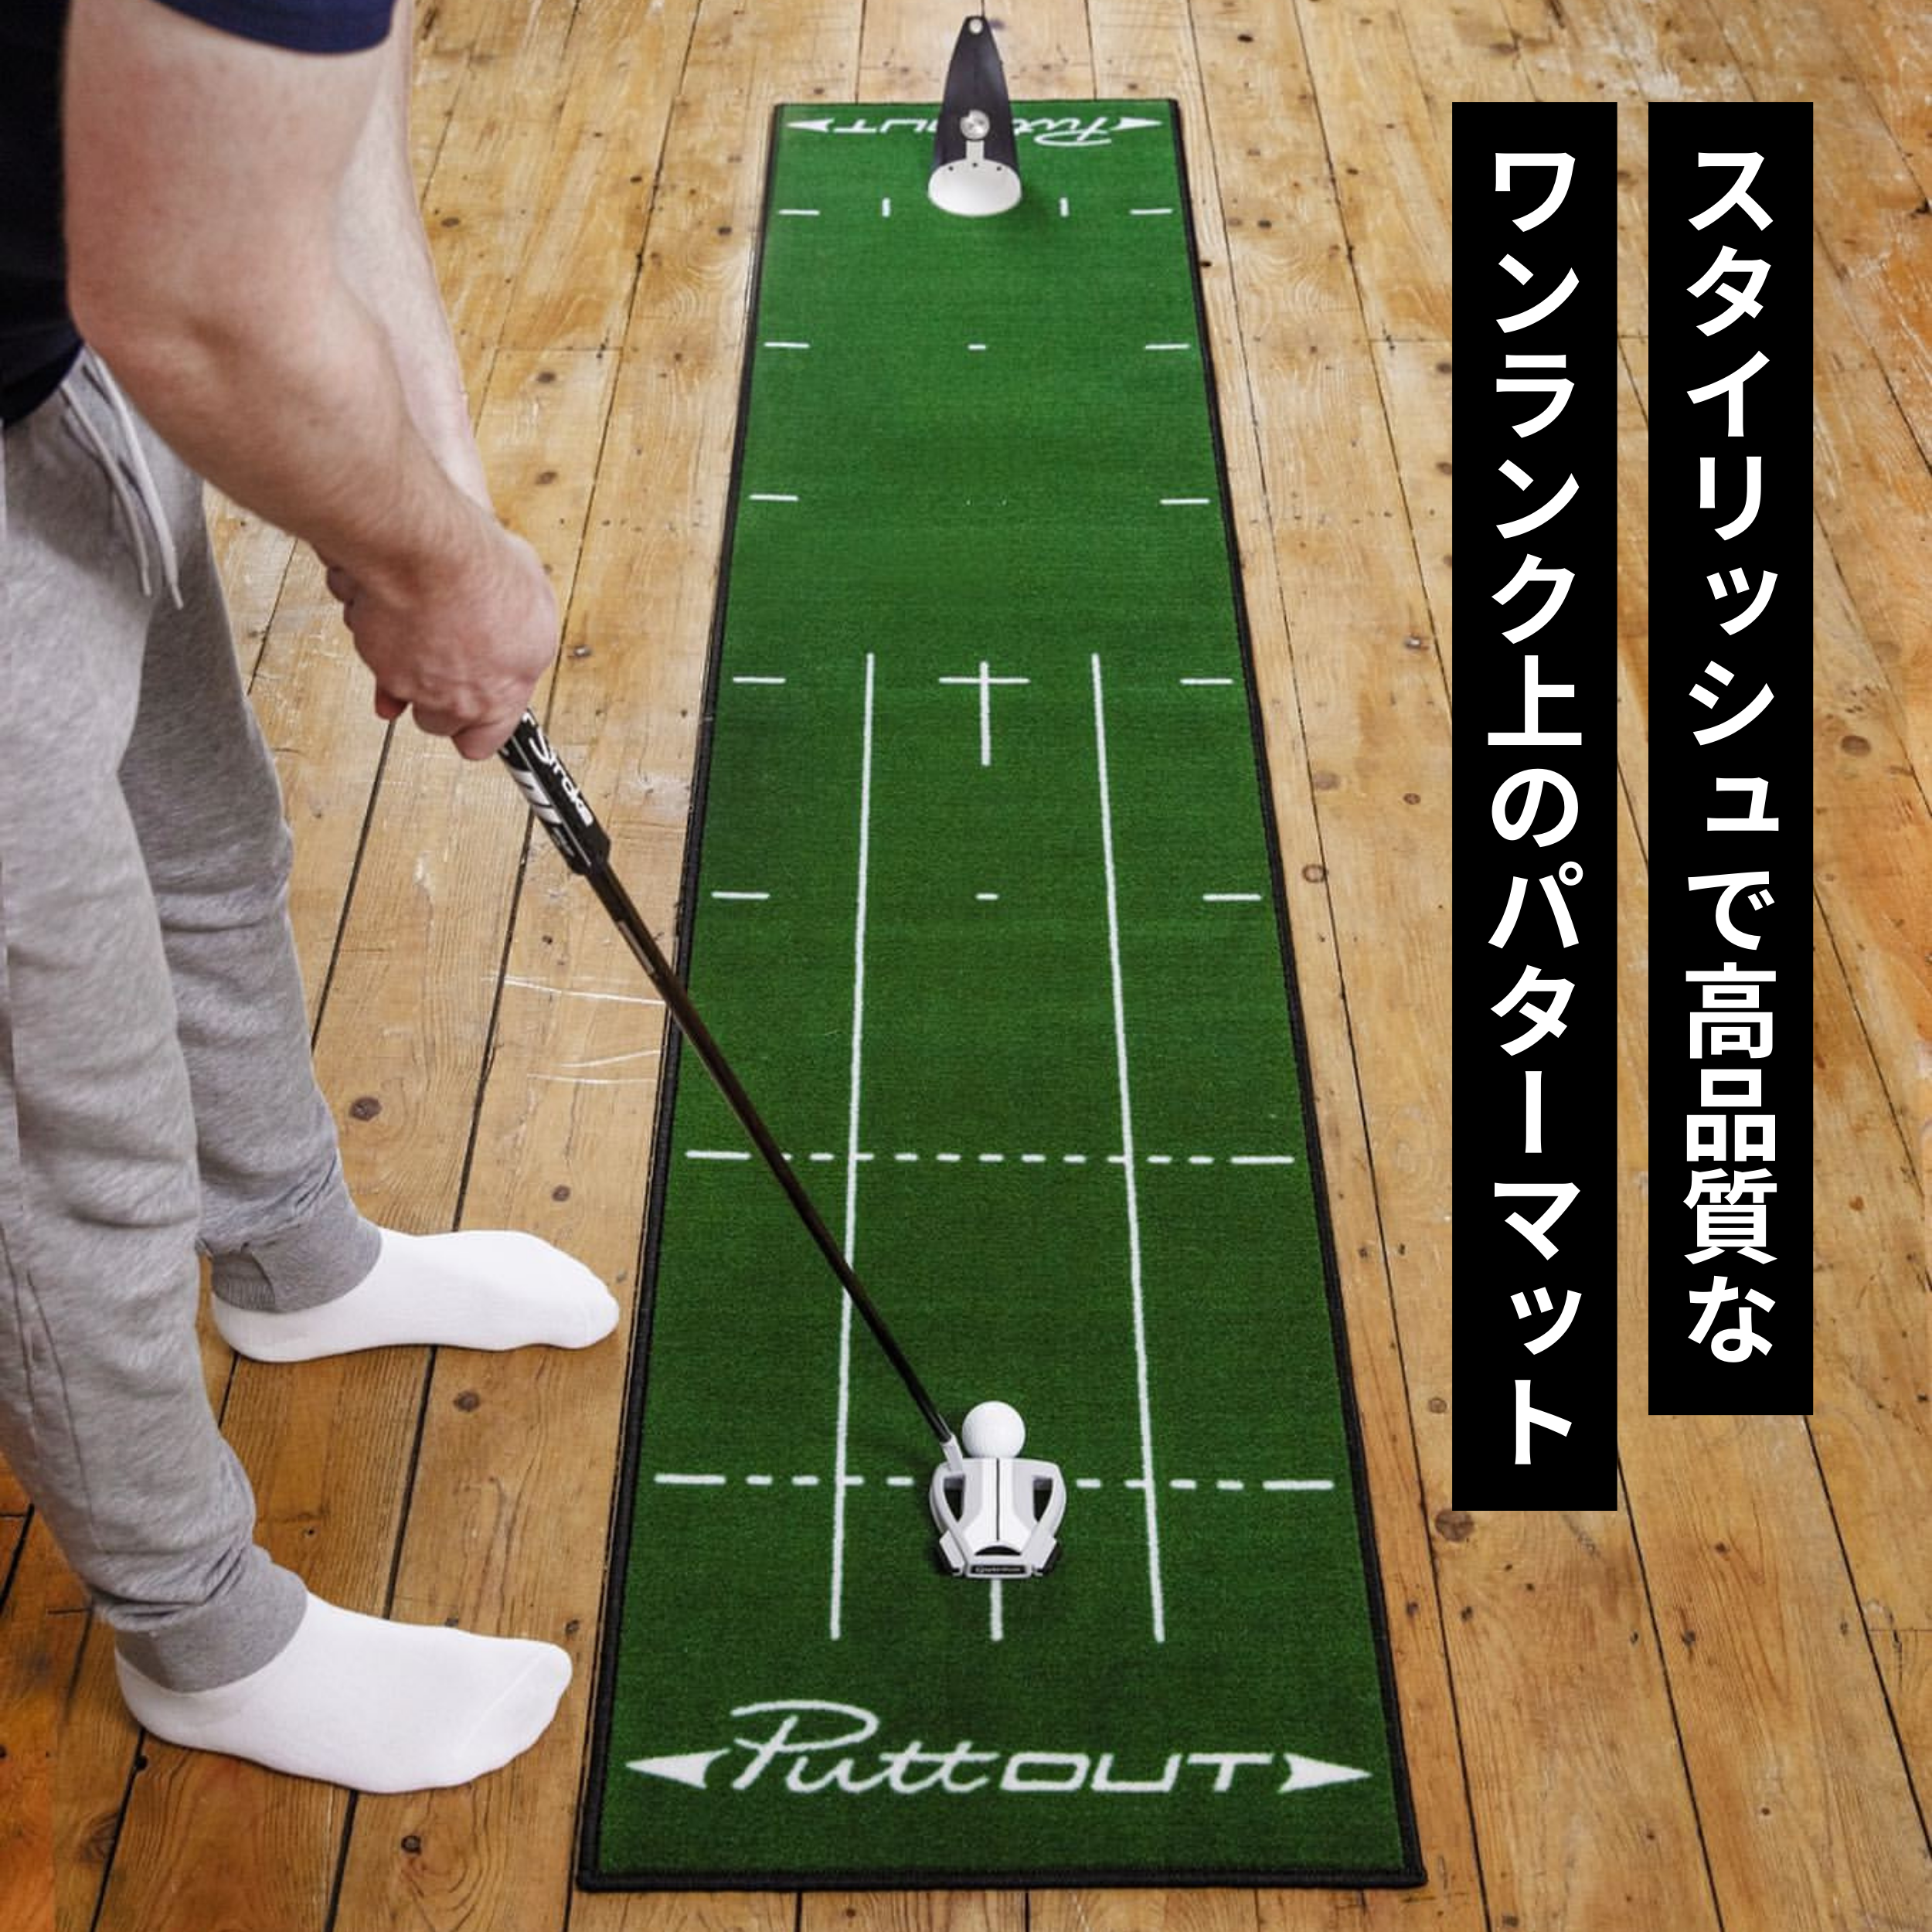 パター 練習 ゴルフ練習 パター練習器具 ゴルフ ゴルフ練習器具 (距離 